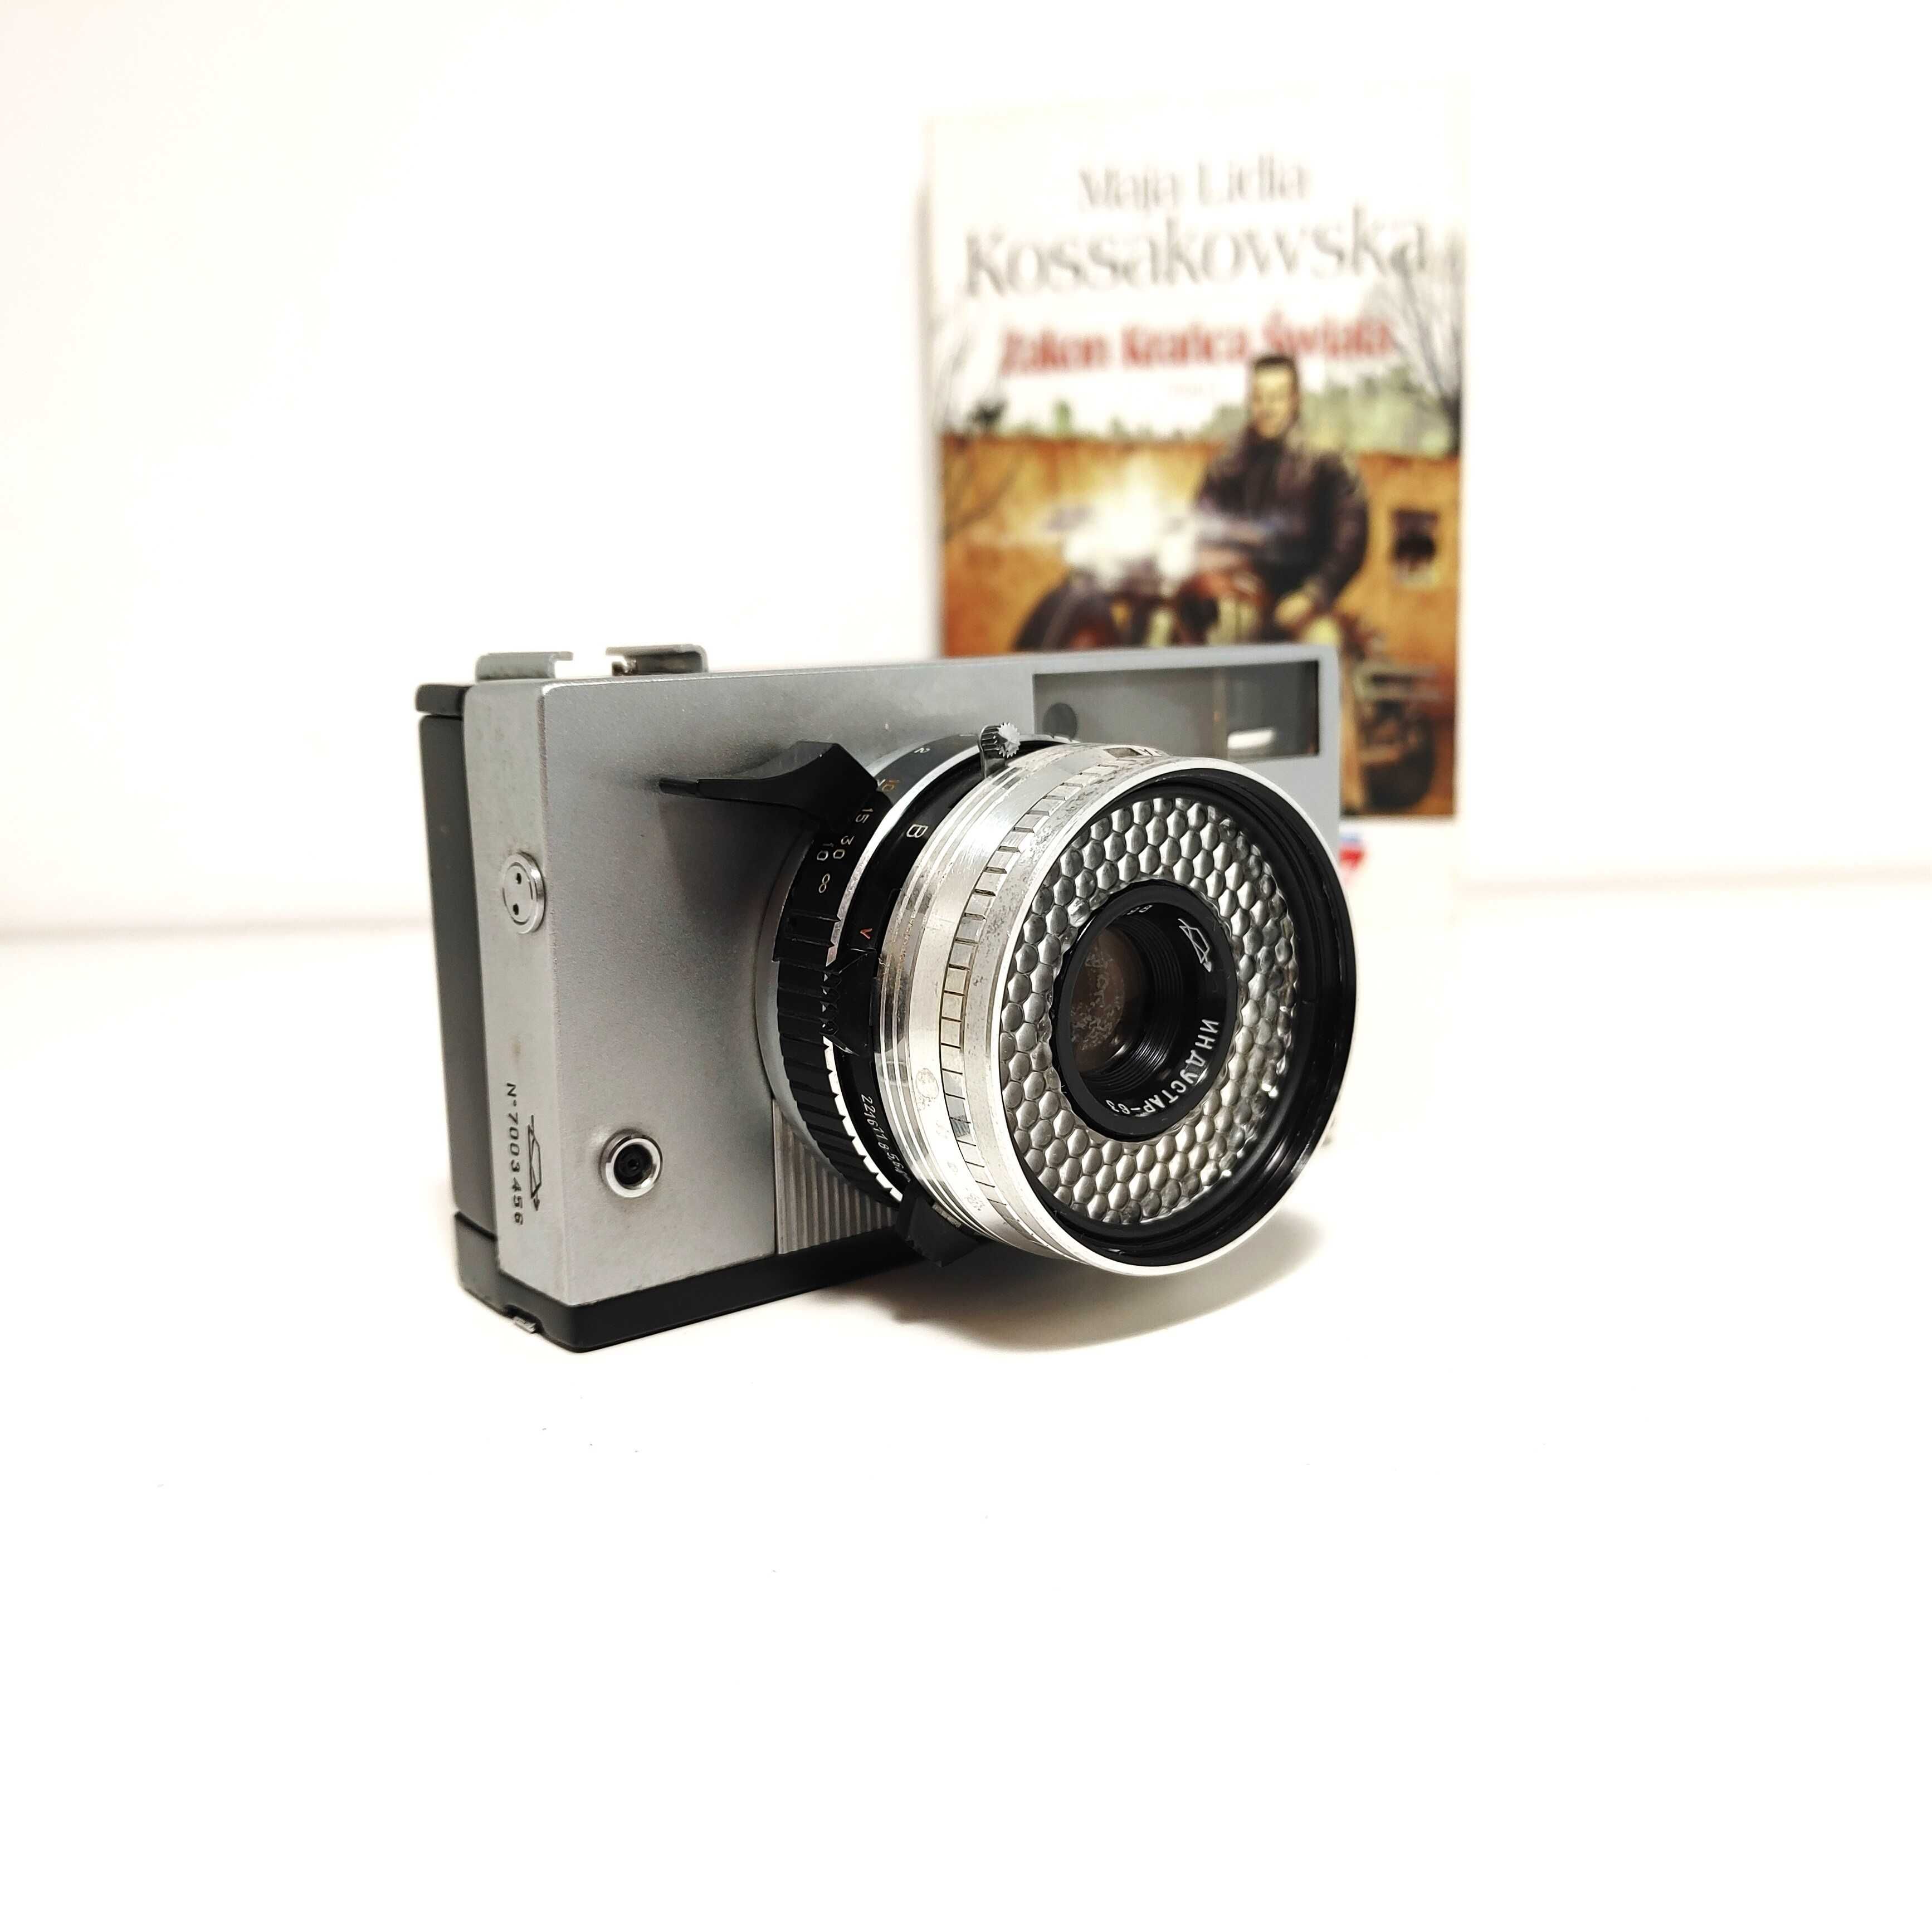 Analogowy aparat fotograficzny Zorki 10 z  Indrustial 63 1:2,8 45mm